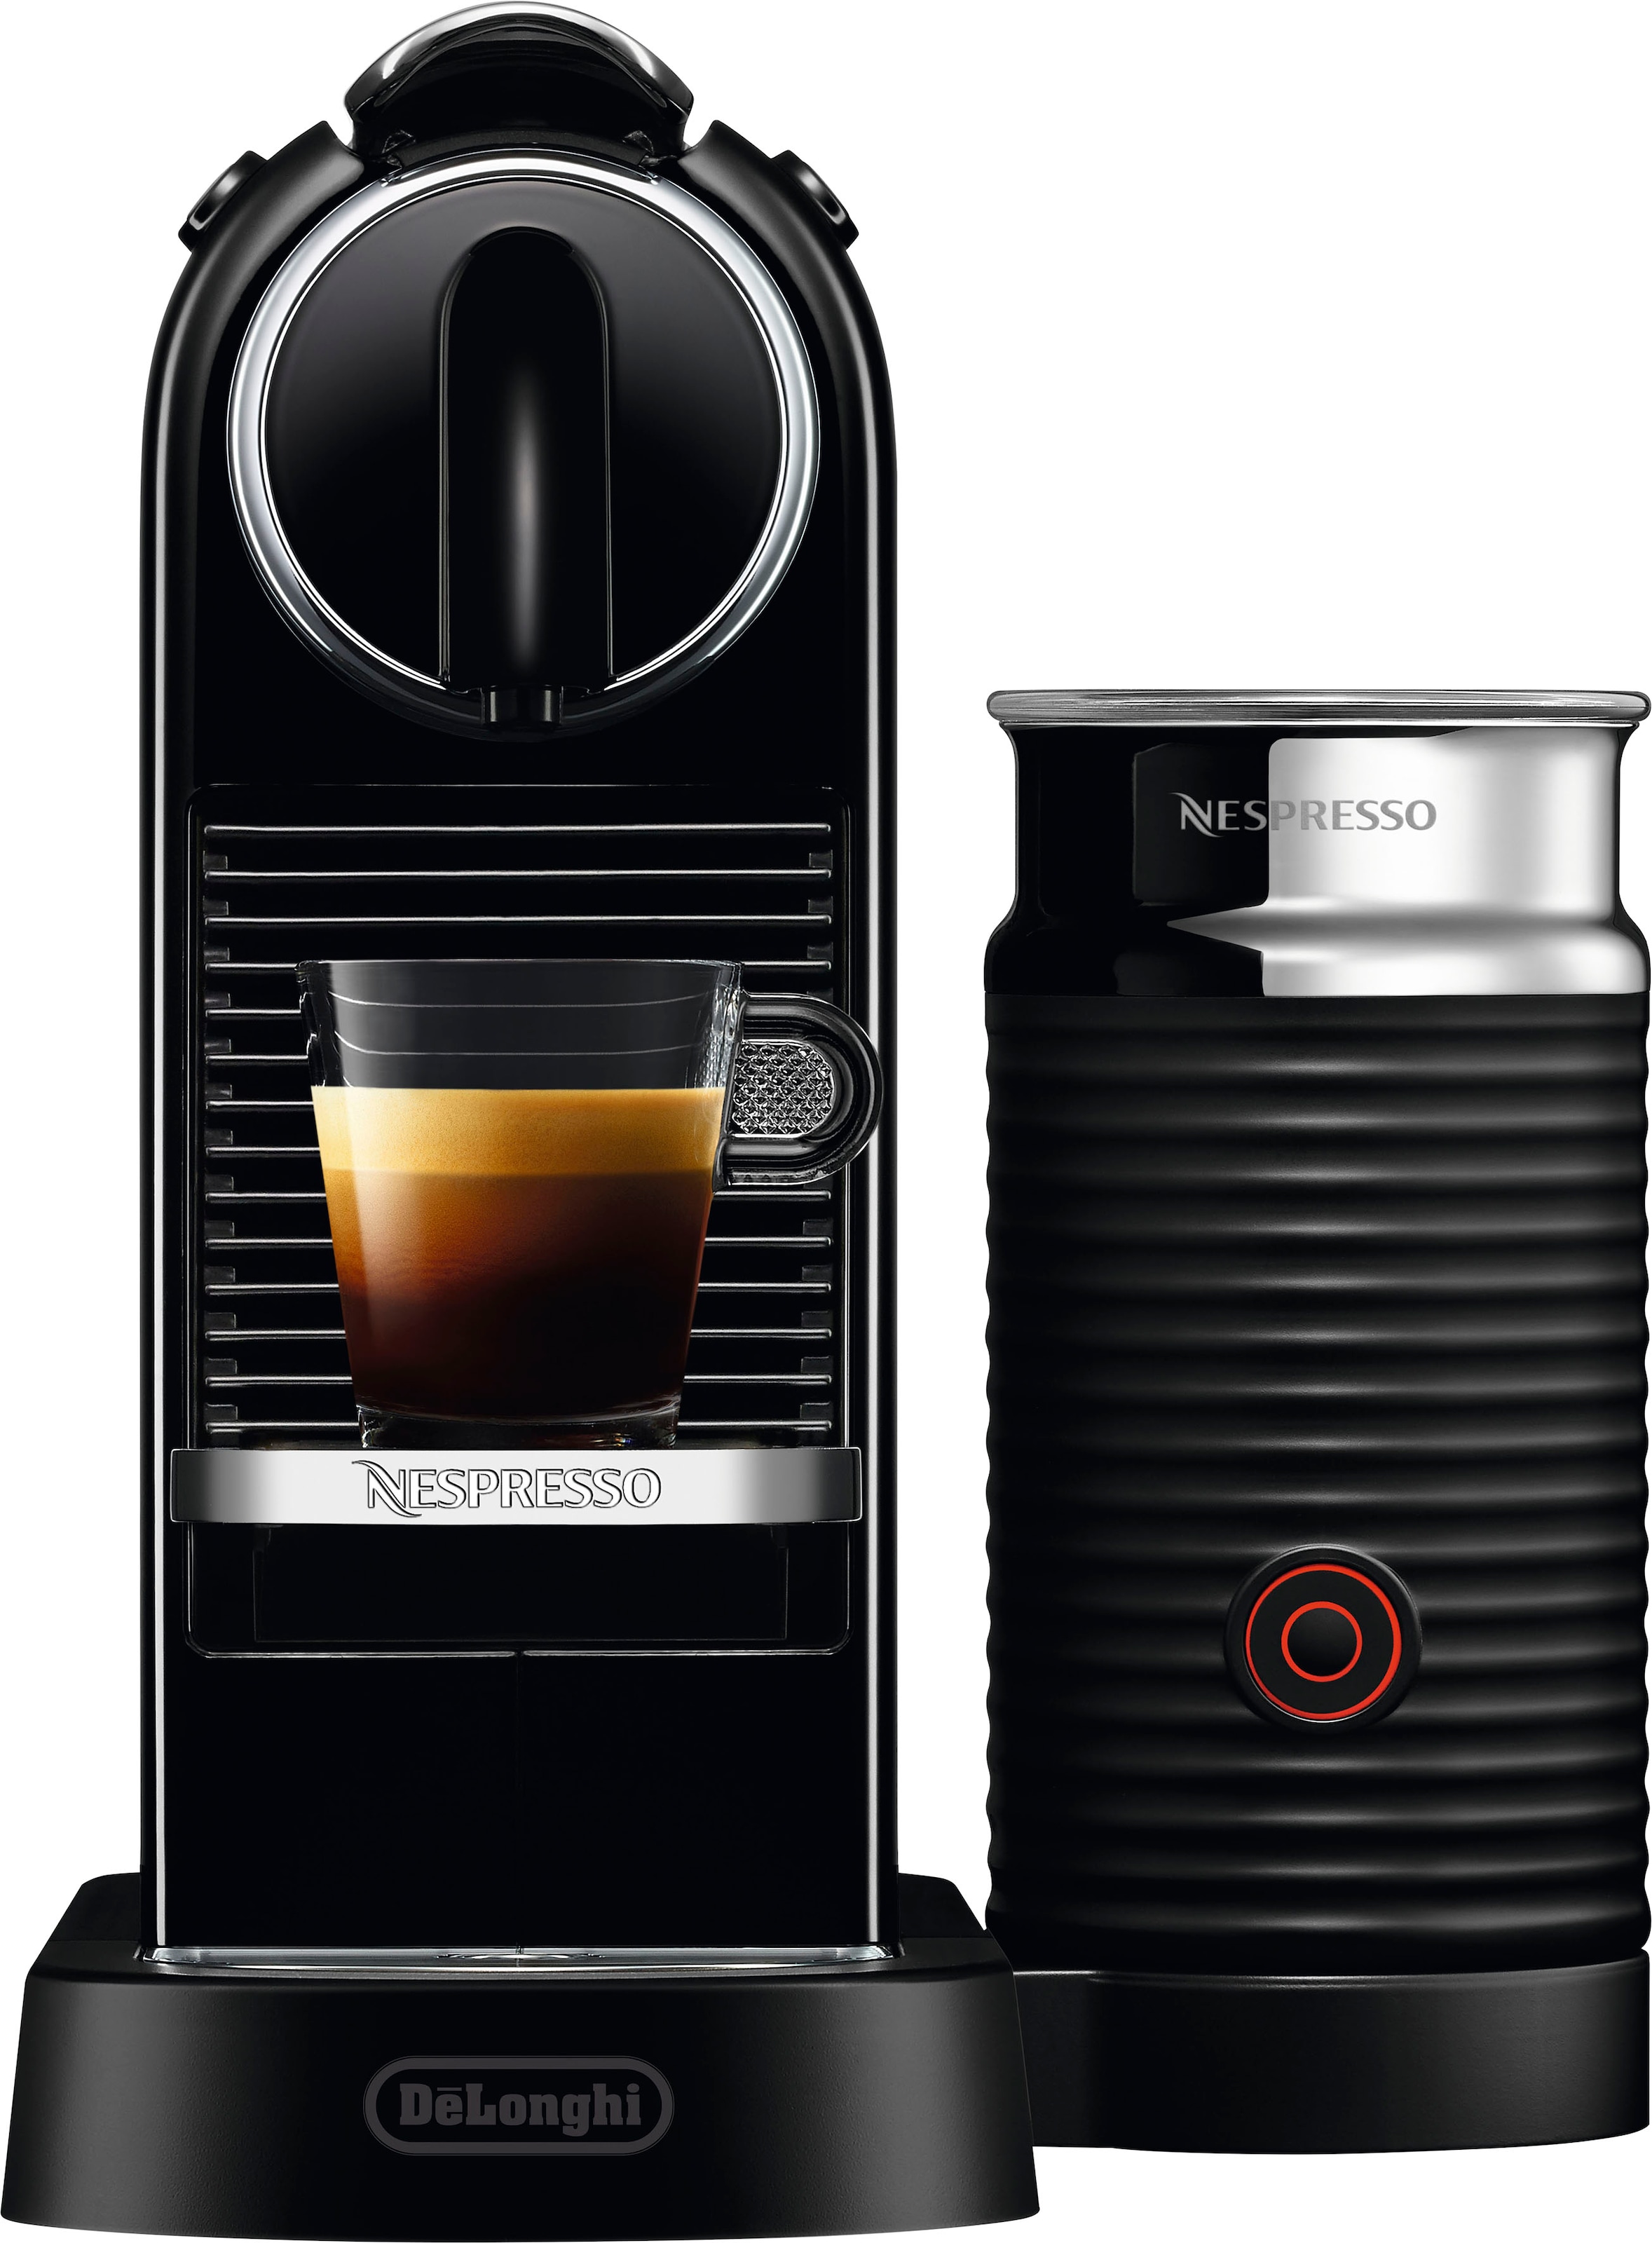 Nespresso Kapselmaschine »CITIZ EN mit 3 inkl. von Garantie Jahren Willkommenspaket Schwarz«, Milchaufschäumer, mit 7 Kapseln 267.BAE DeLonghi, XXL Aeroccino